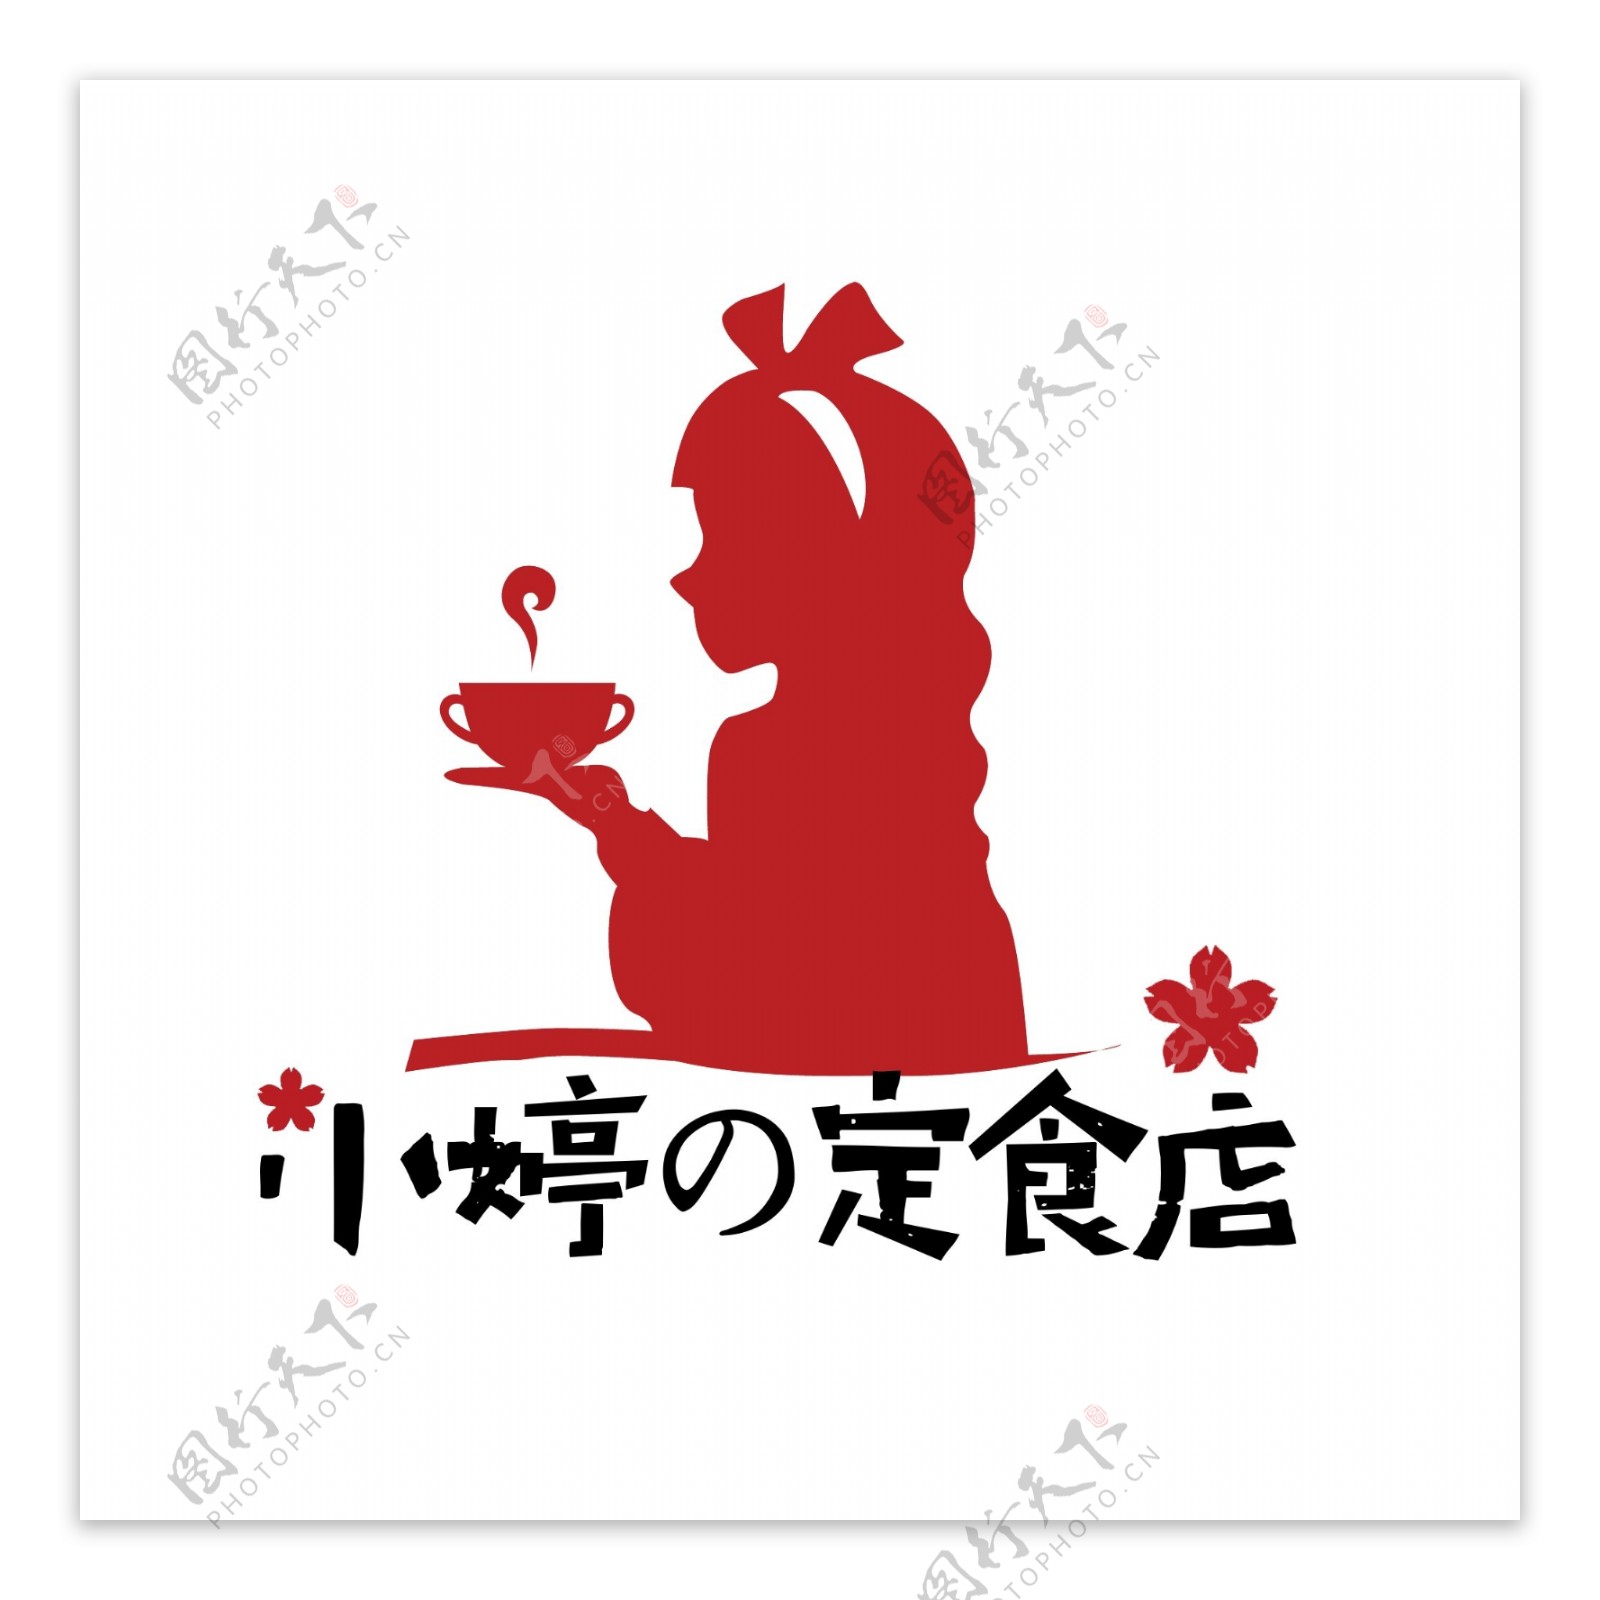 小婷定食店logo设计